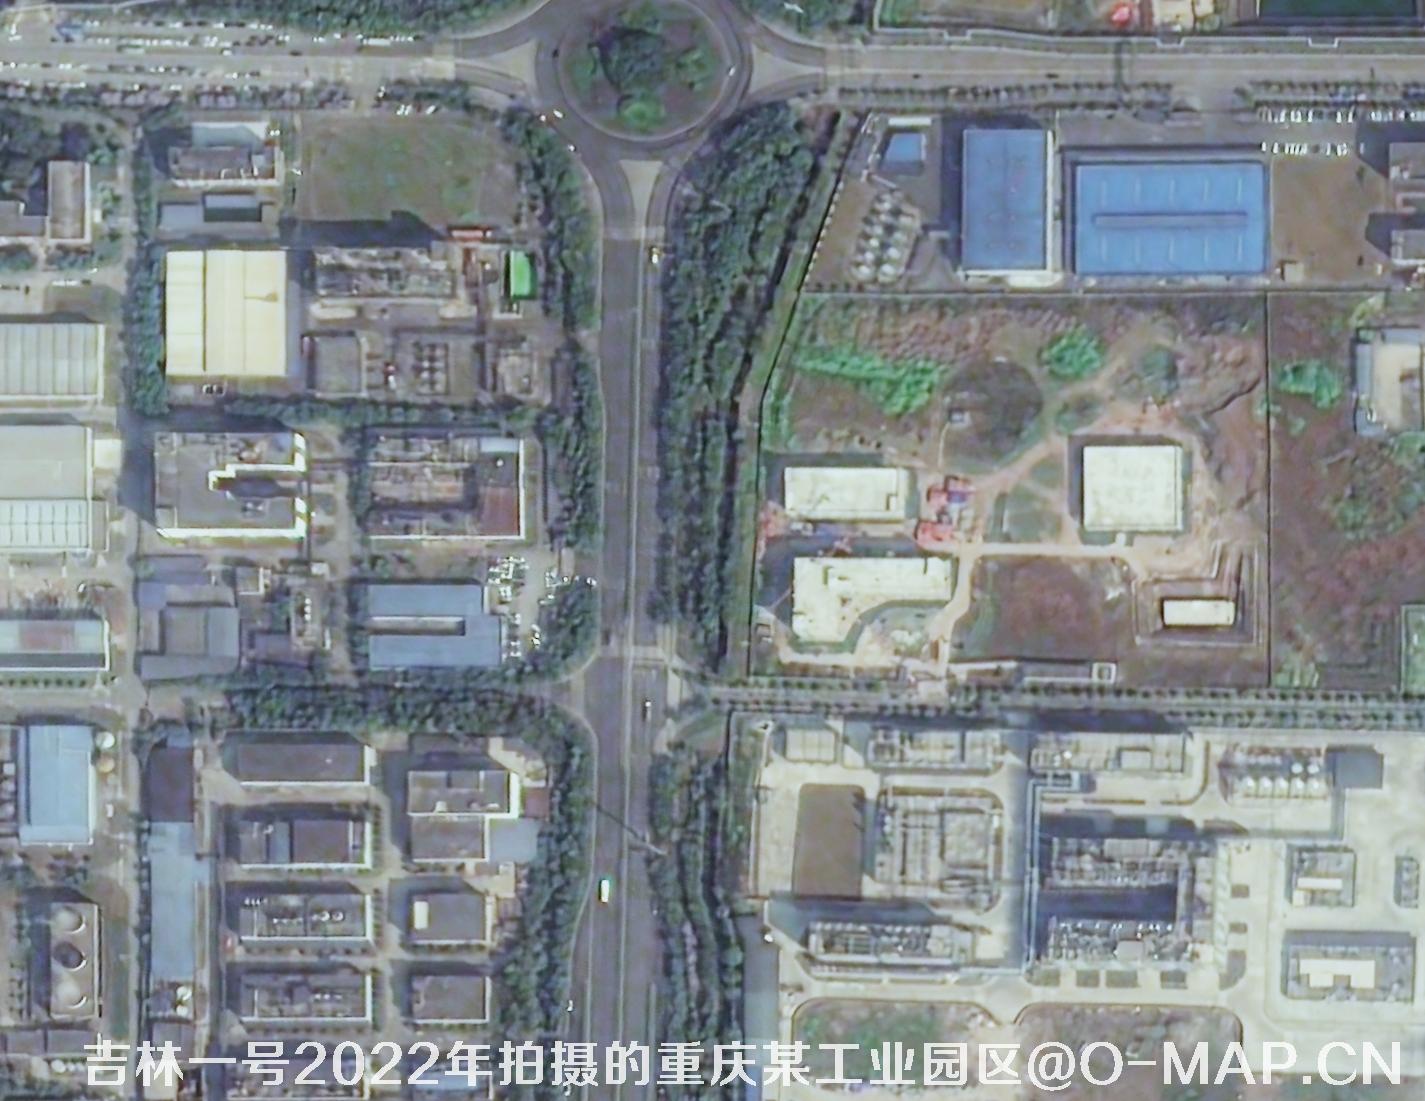 0.75米分辨率卫星图